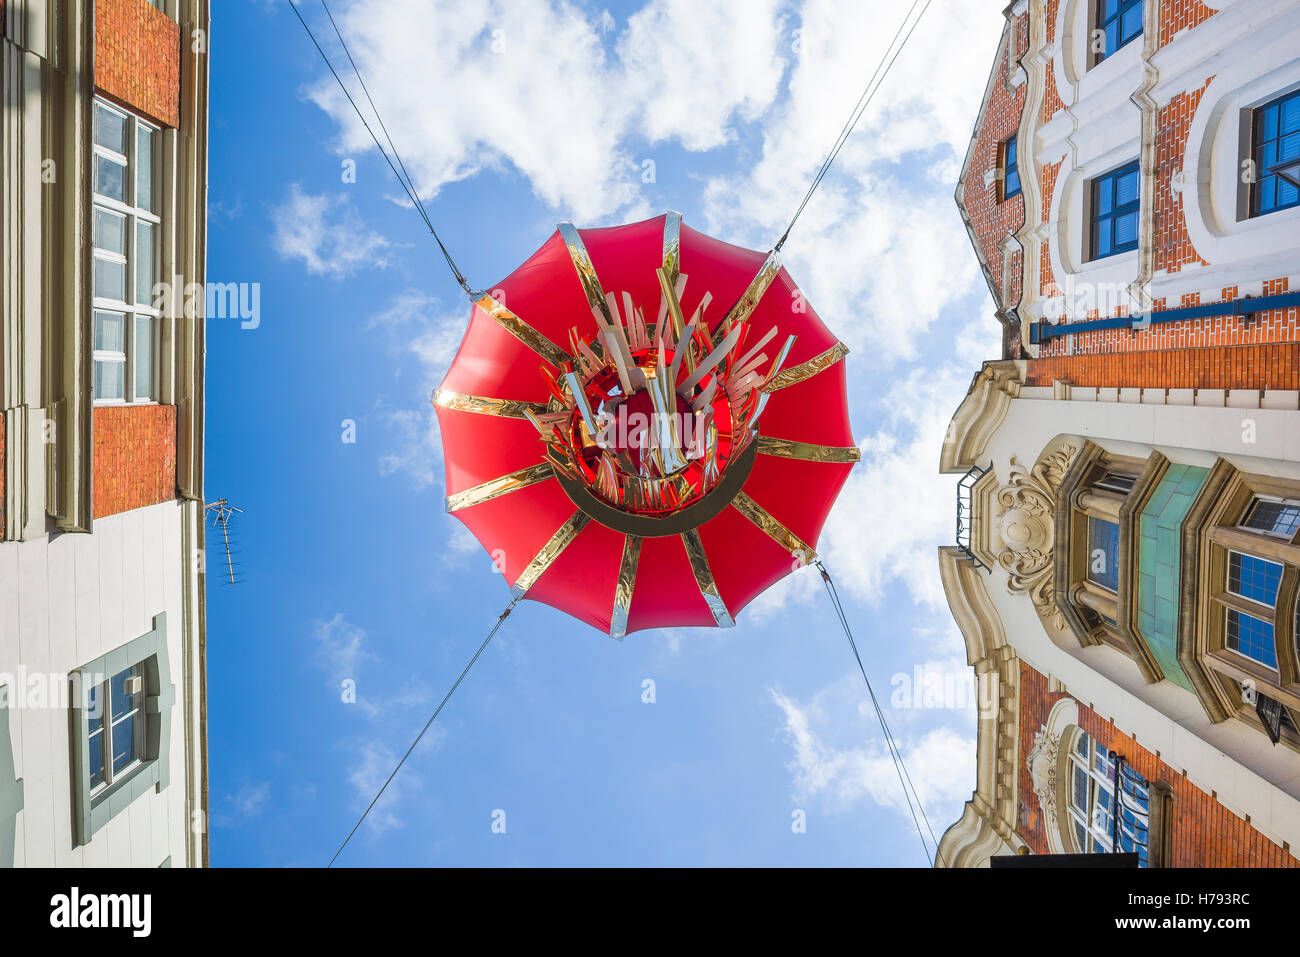 Le quartier chinois de Londres, vue sur le dessous d'une immense lanterne rouge suspendu au-dessus de la rue Gerrard dans Chinatown, Soho de Londres, Royaume-Uni. Banque D'Images